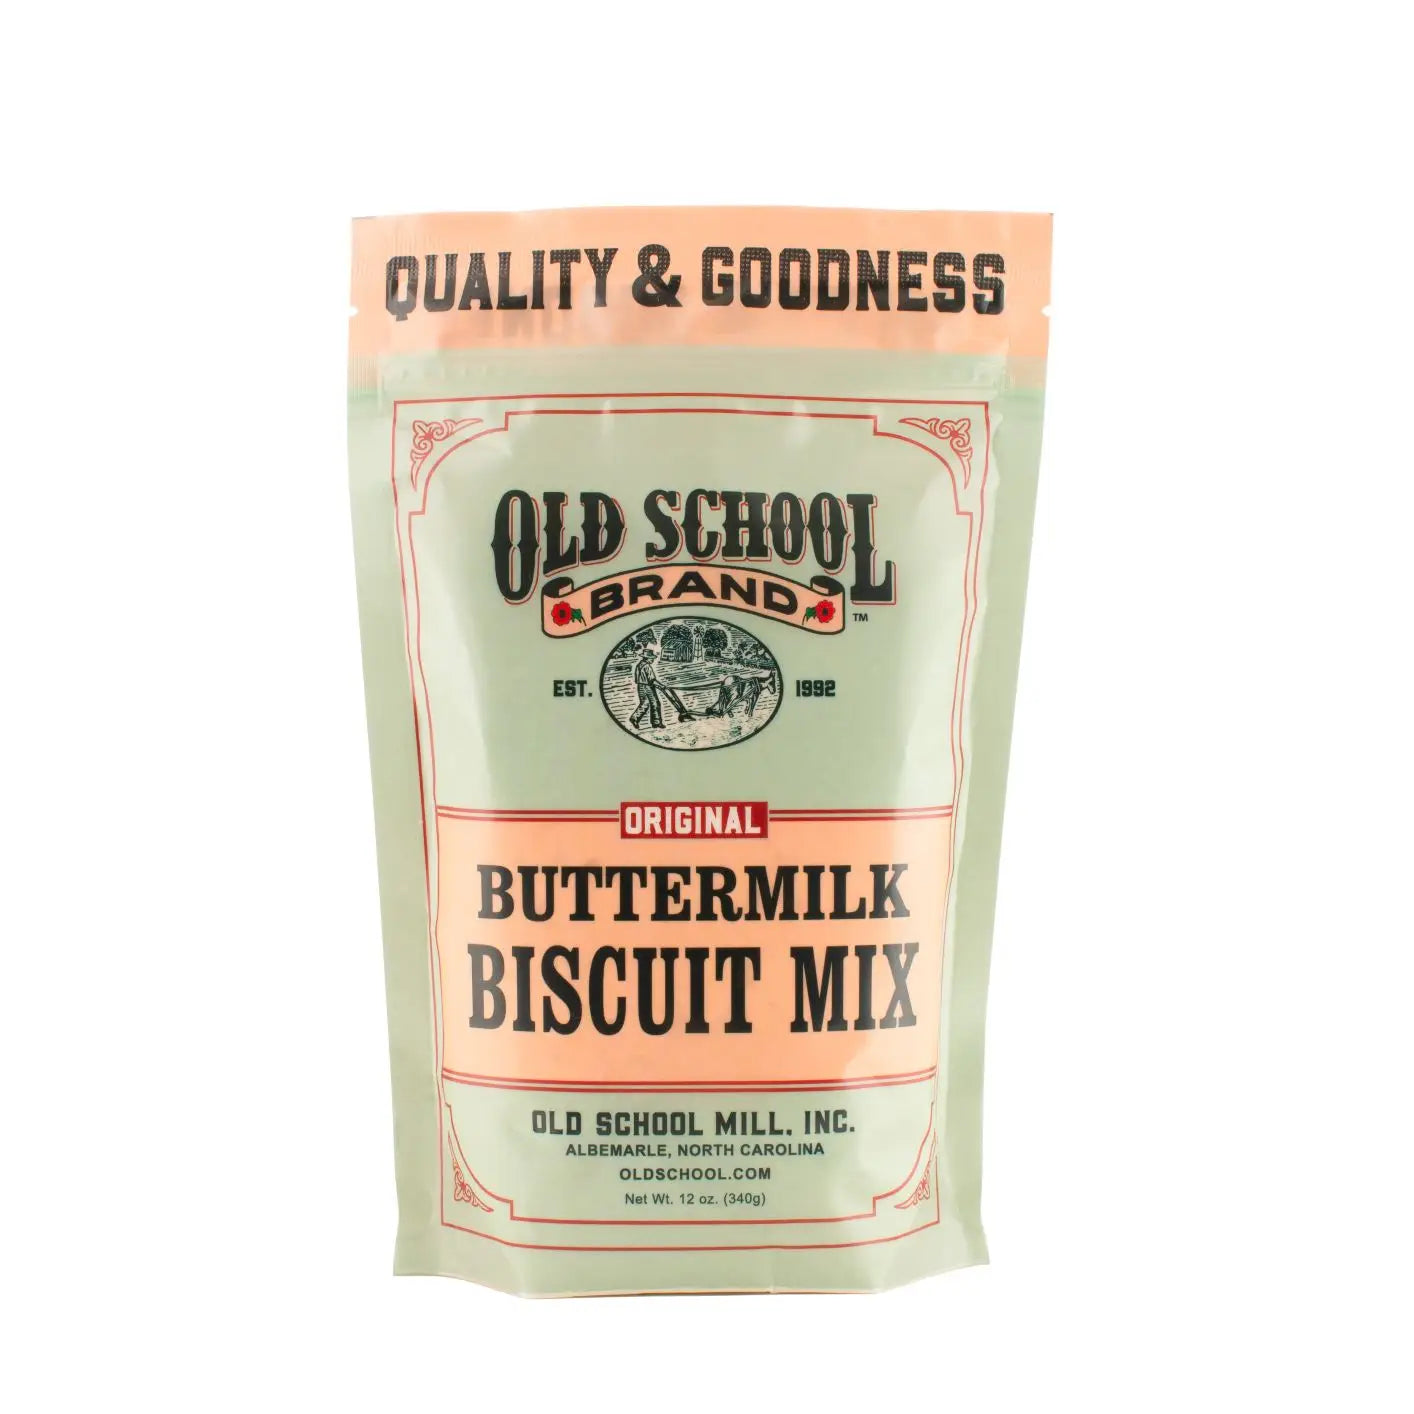 Buttermilk biscuit Mix